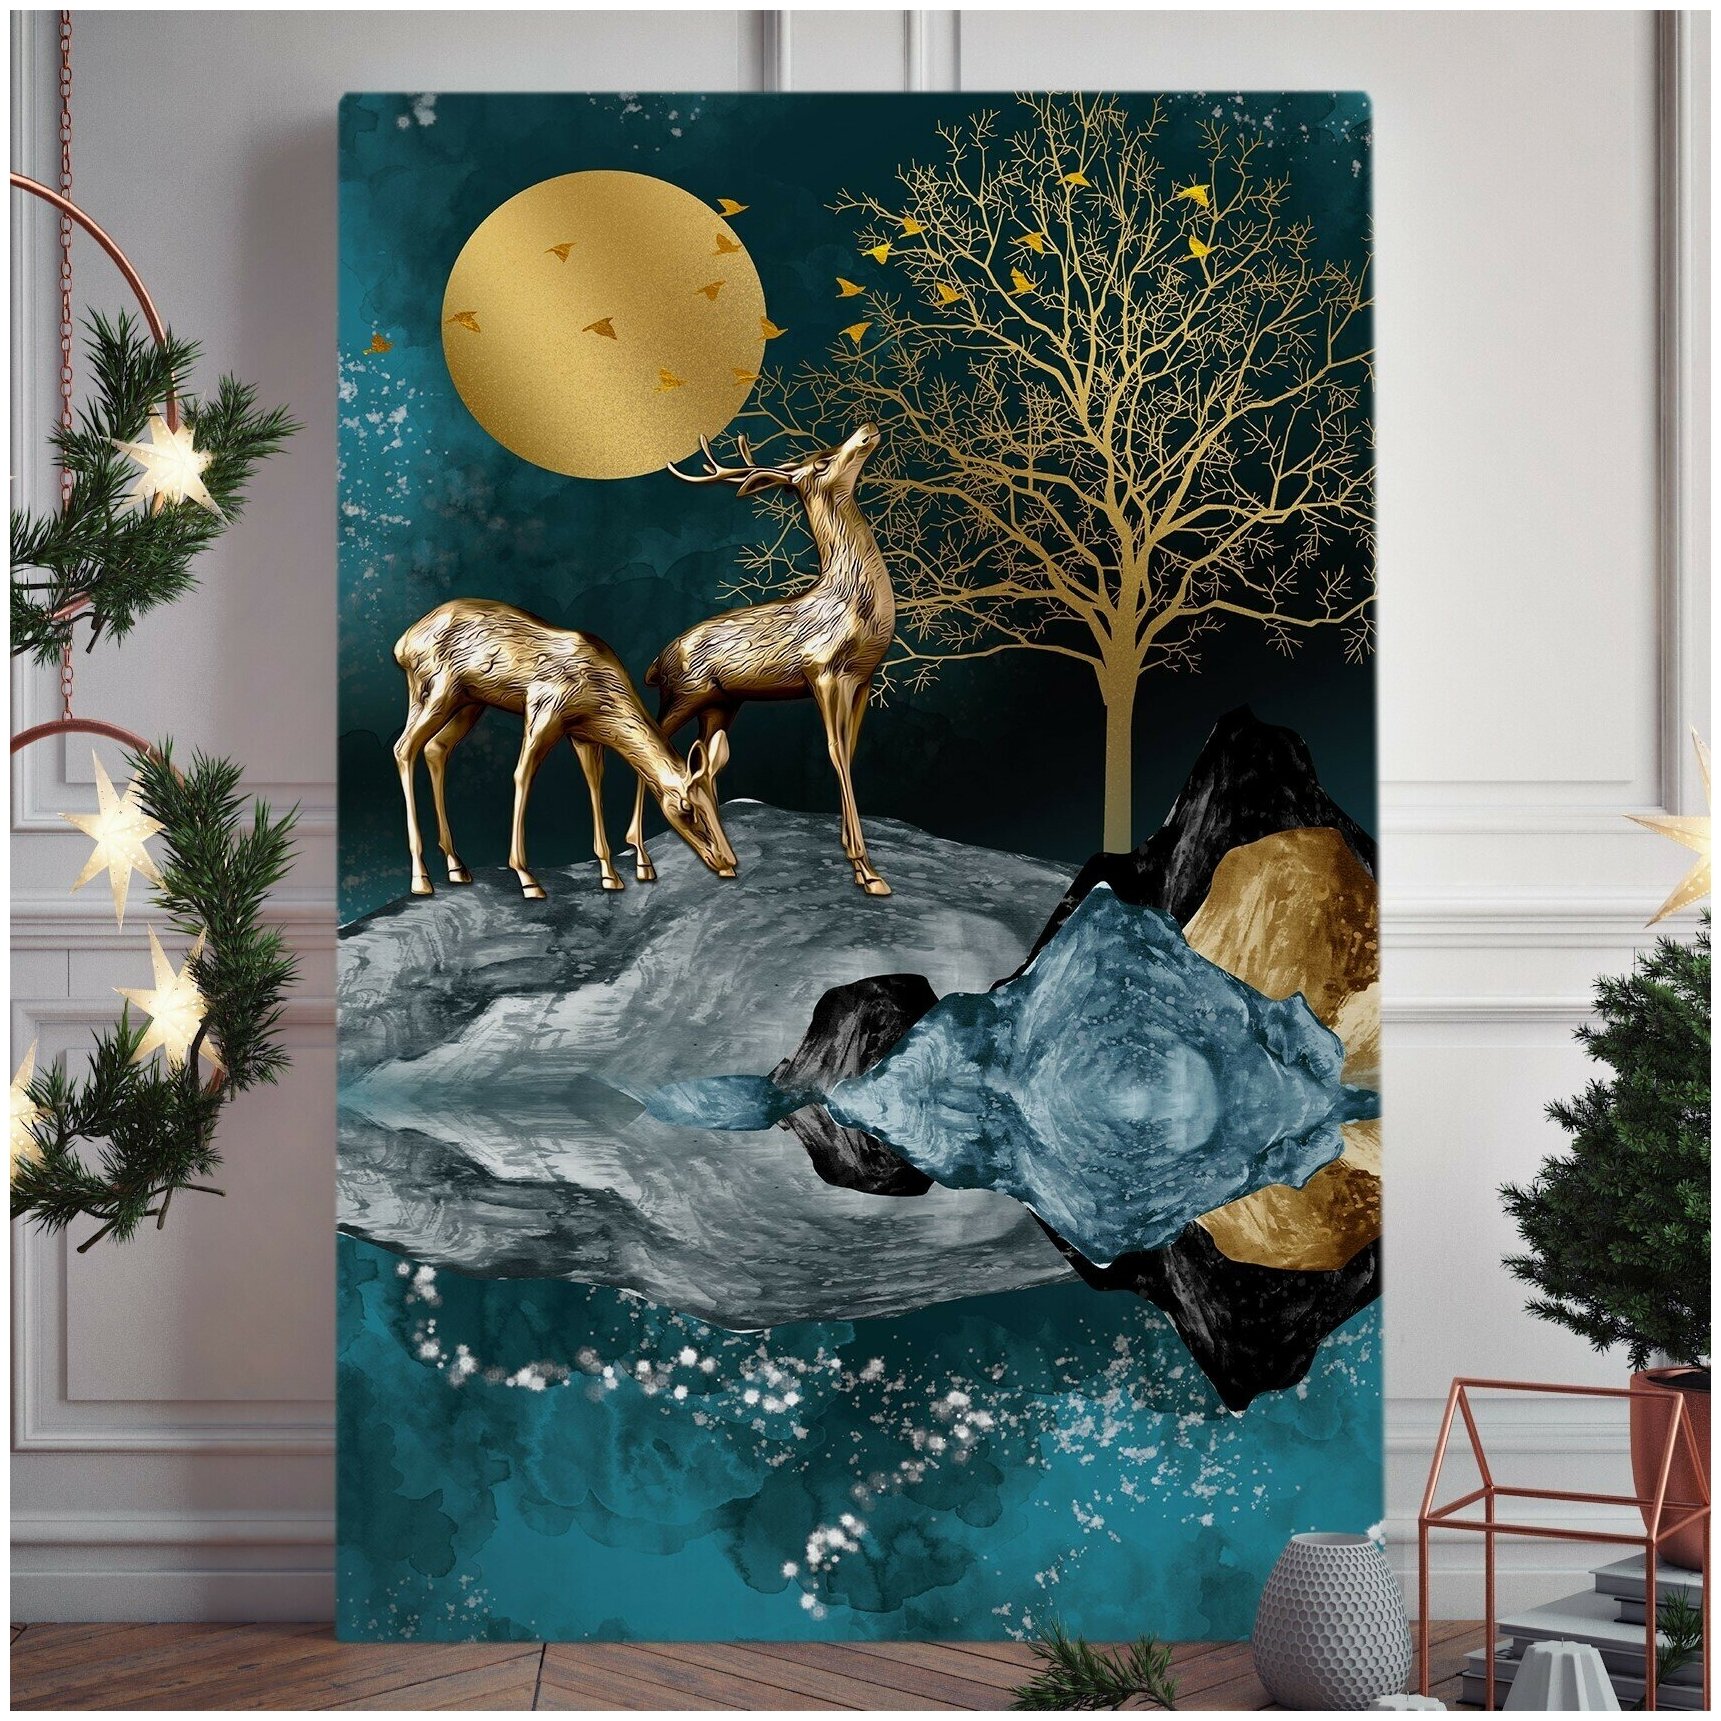 Интерьерная картина "Лунная пара" на натуральном хлопковом холсте, большая, размер 30 на 45/ 30х45 см